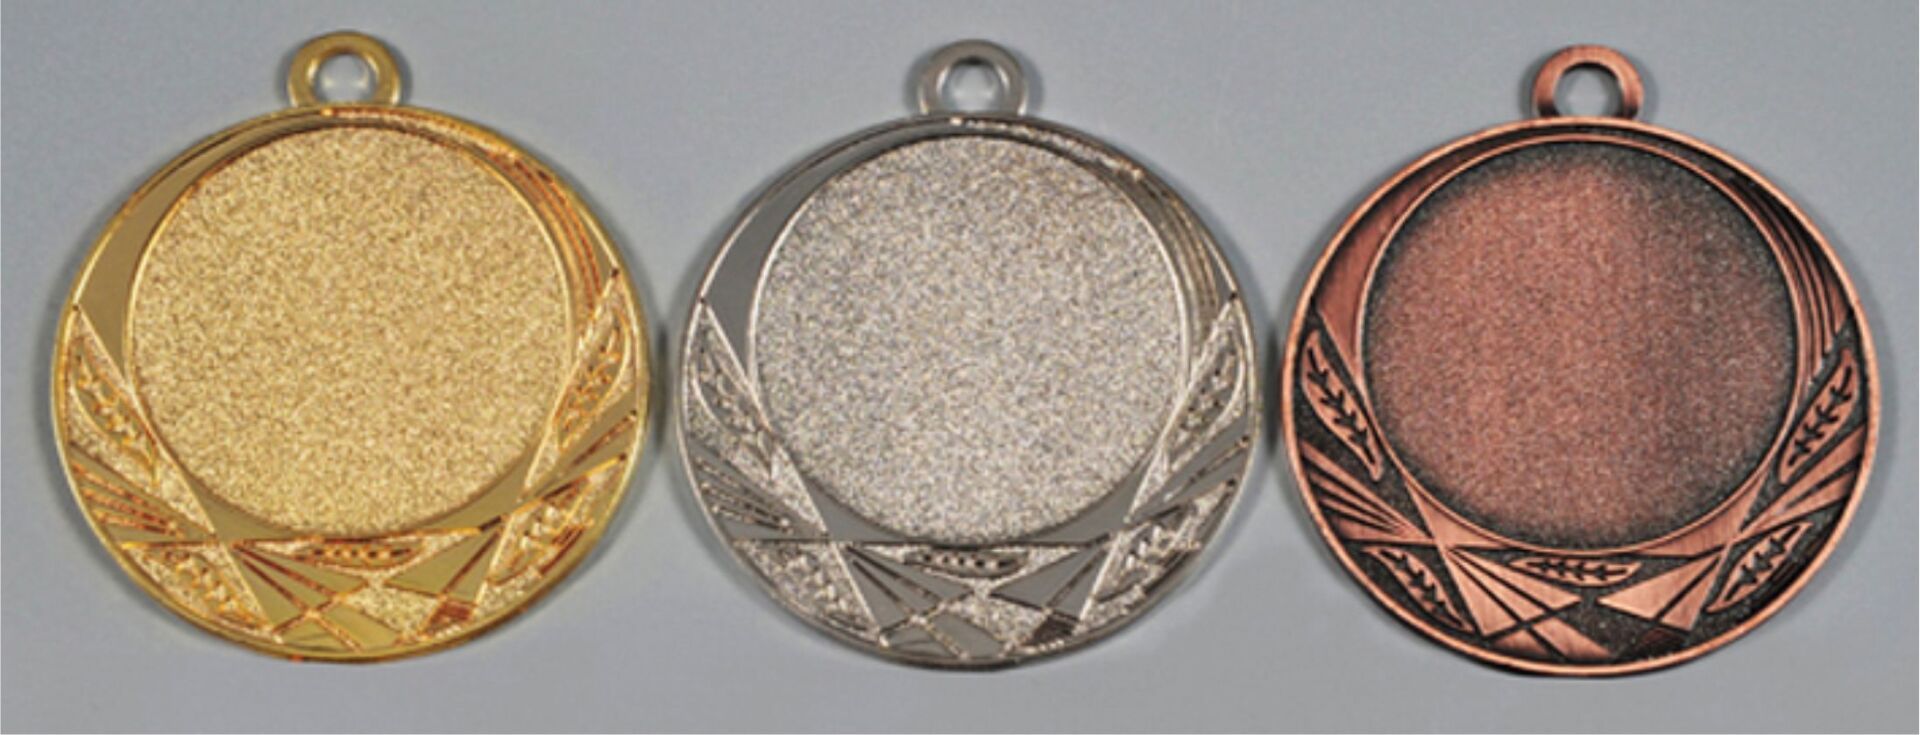 Medaillen gold silber bronze